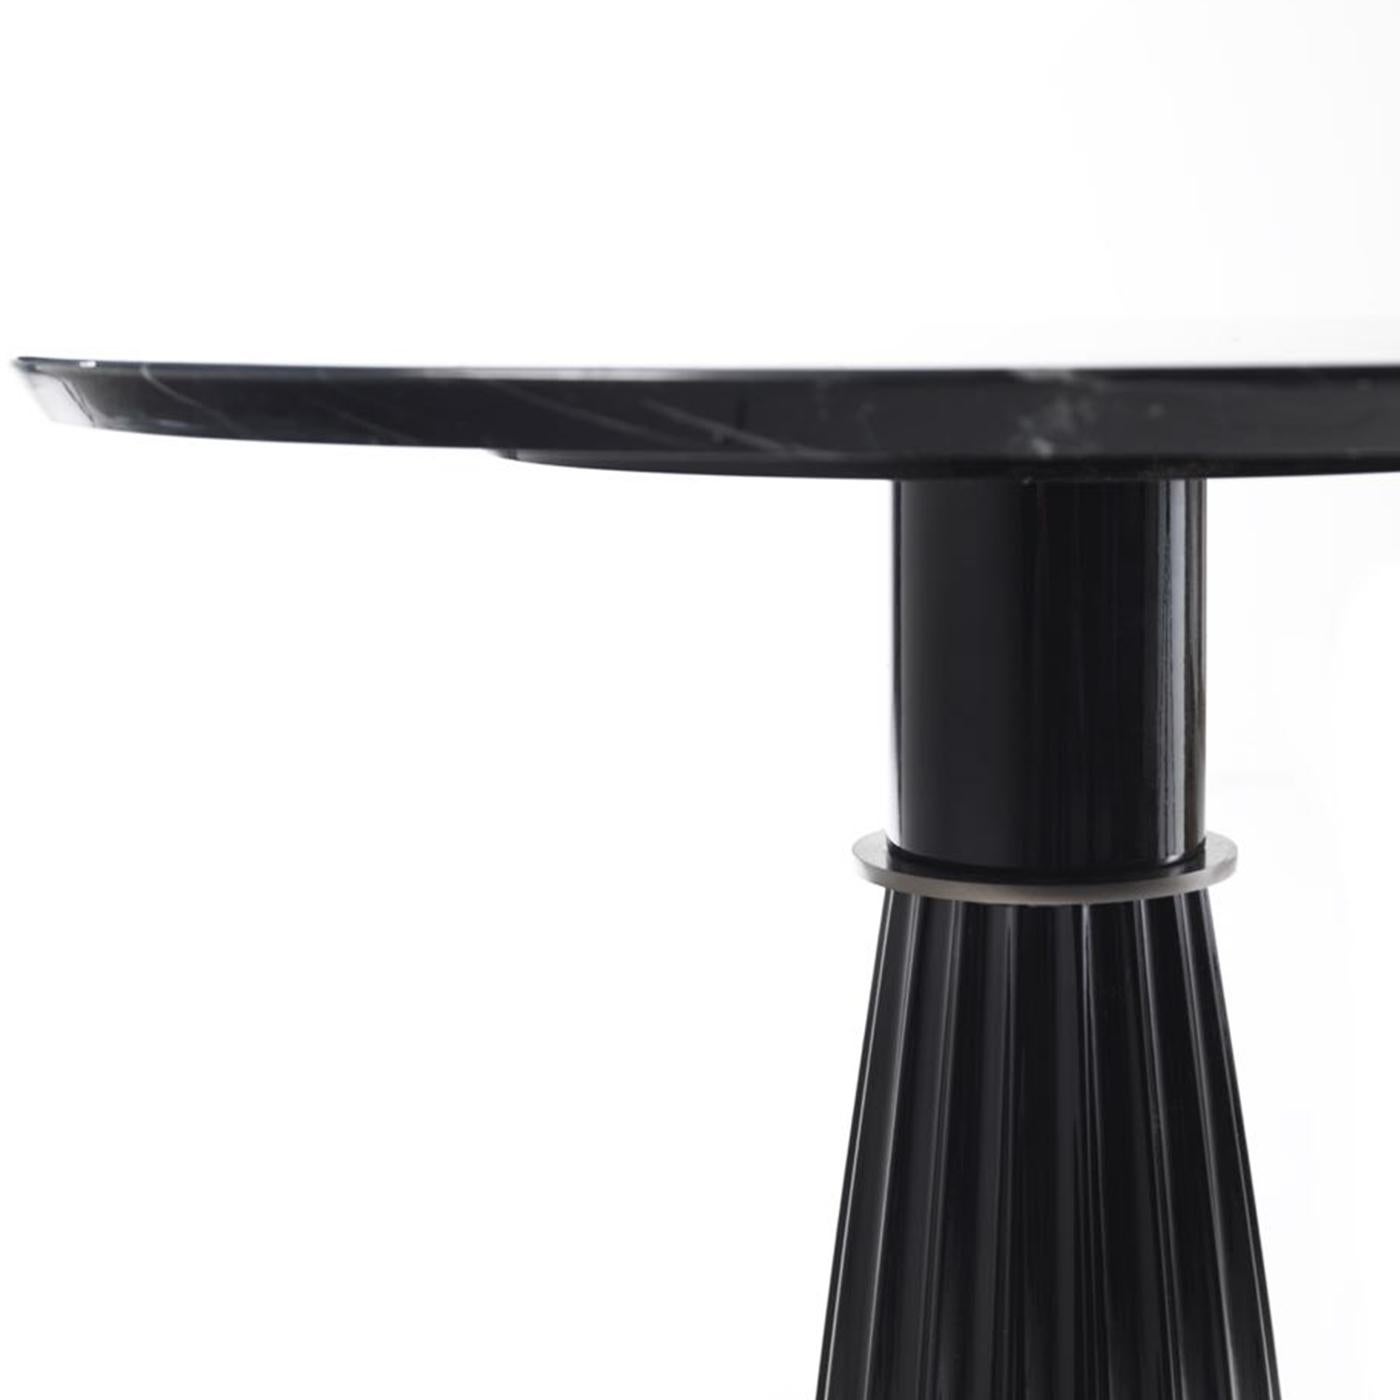 Esta mesa auxiliar alta, que forma parte de la colección Orlando, puede colocarse sola en un salón, una entrada o un estudio, o puede combinarse con su homóloga baja para conseguir un efecto dinámico. El encanto clásico de esta pieza es